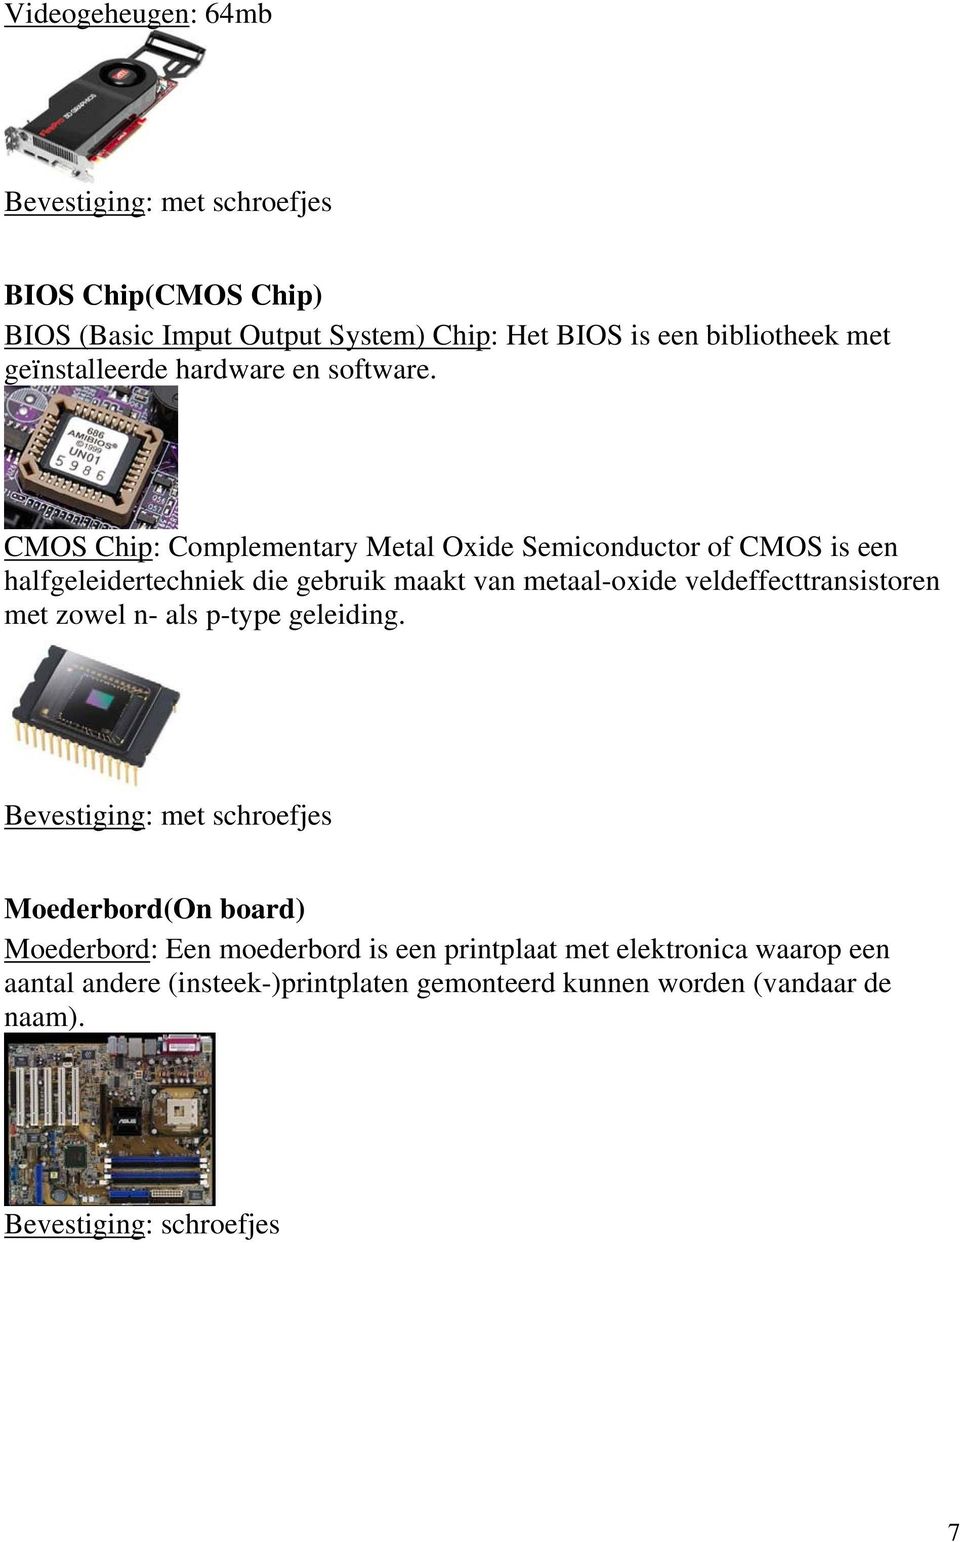 CMOS Chip: Complementary Metal Oxide Semiconductor of CMOS is een halfgeleidertechniek die gebruik maakt van metaal-oxide veldeffecttransistoren